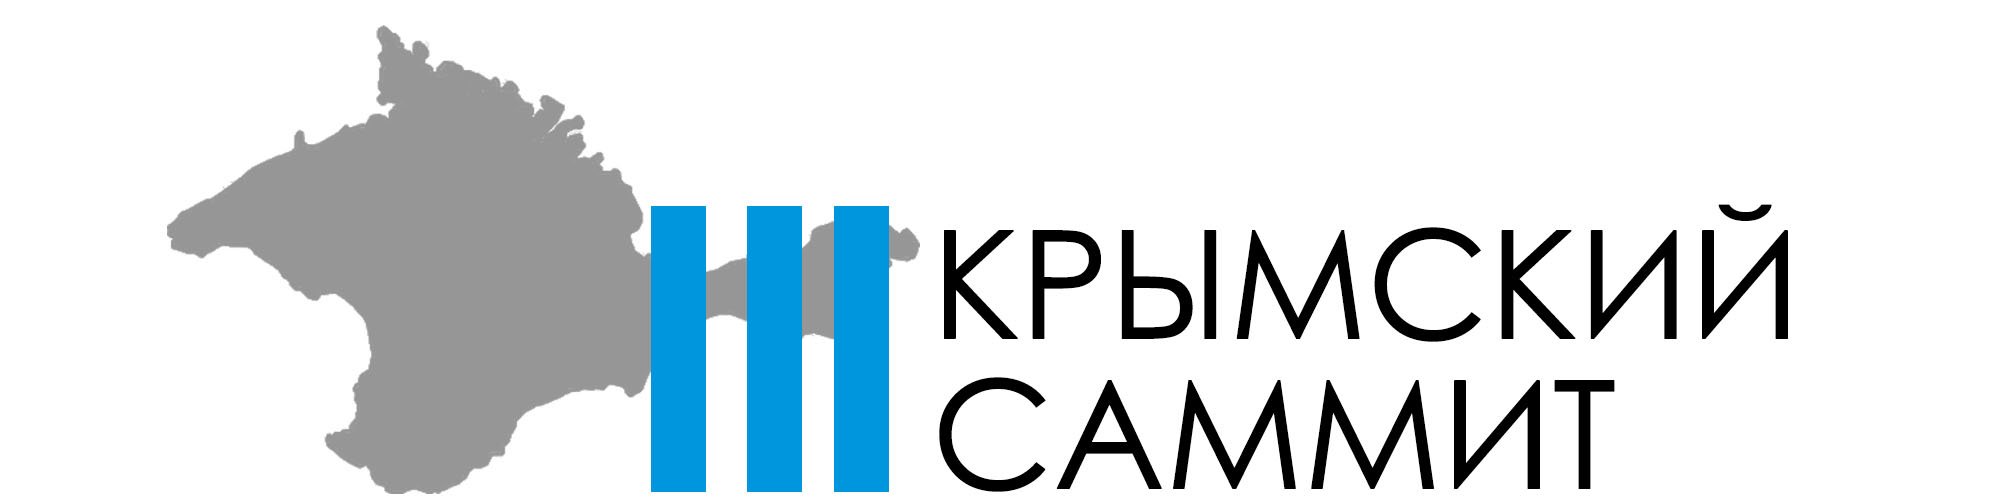 Третий Крымский саммит